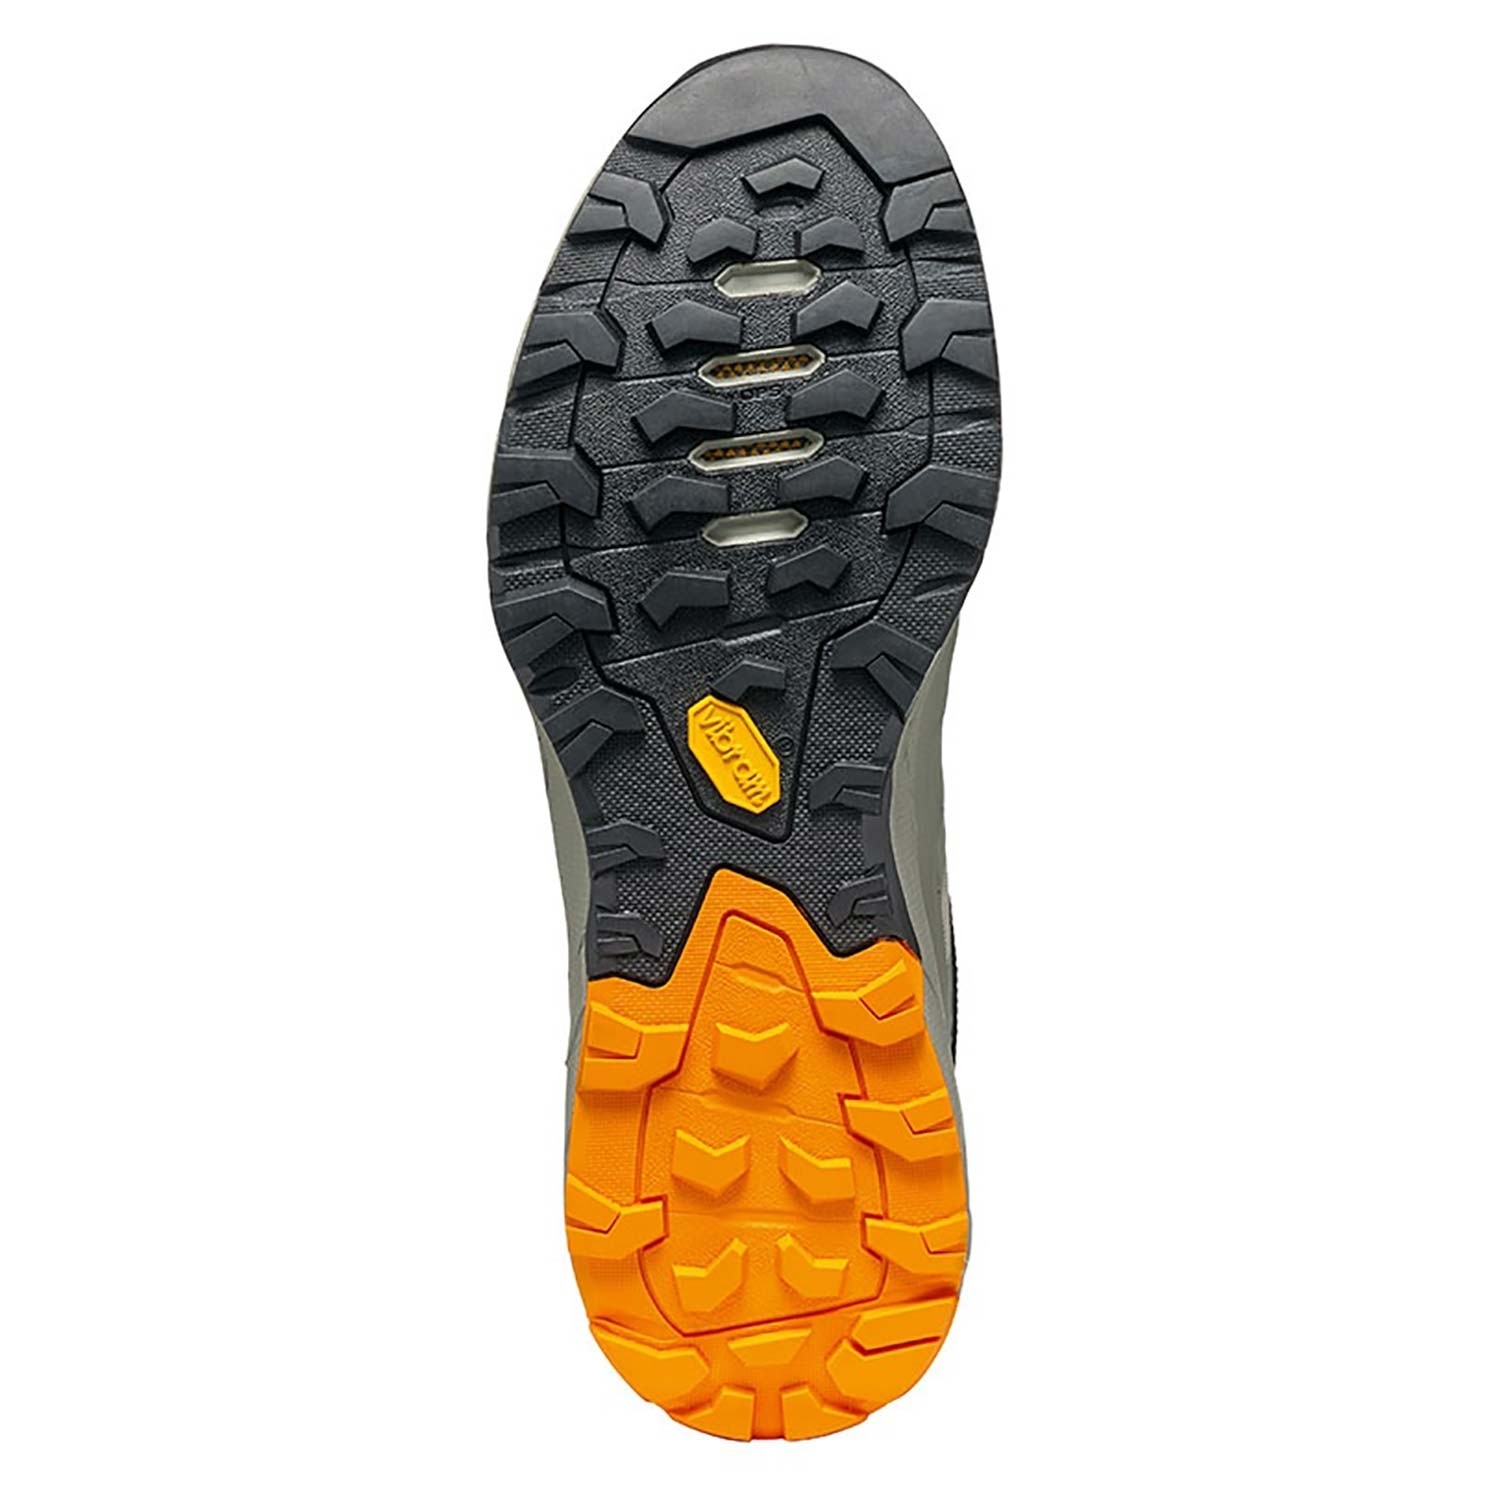 Scarpa Rapid Approach Shoe - Men's - Rock/Orange